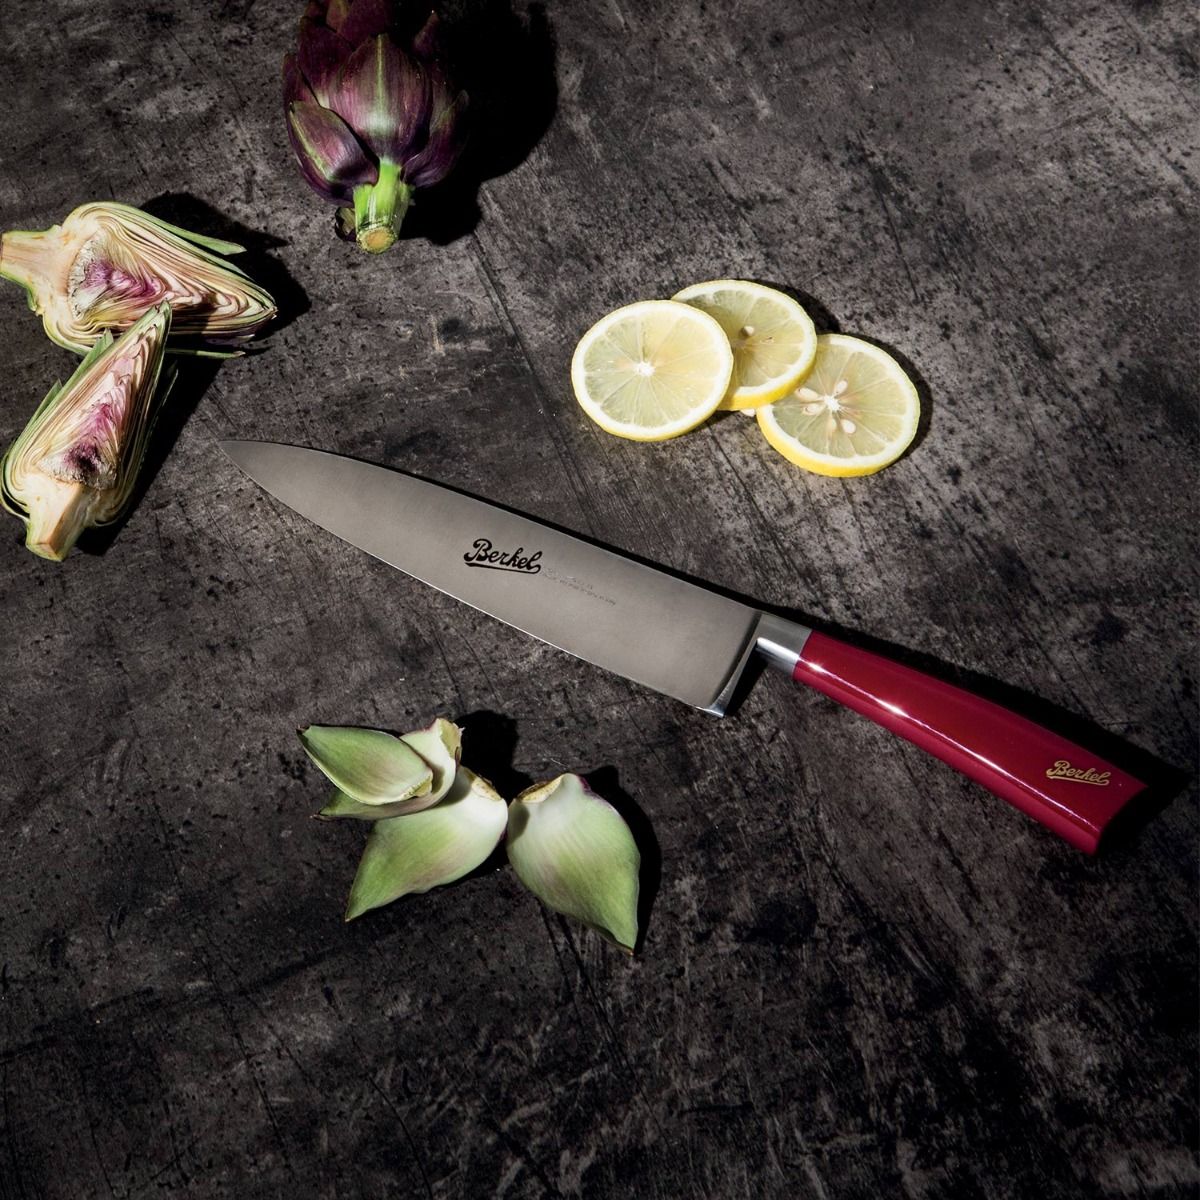 Berkel Elegance Bread Knife, Steel 22 cm handle